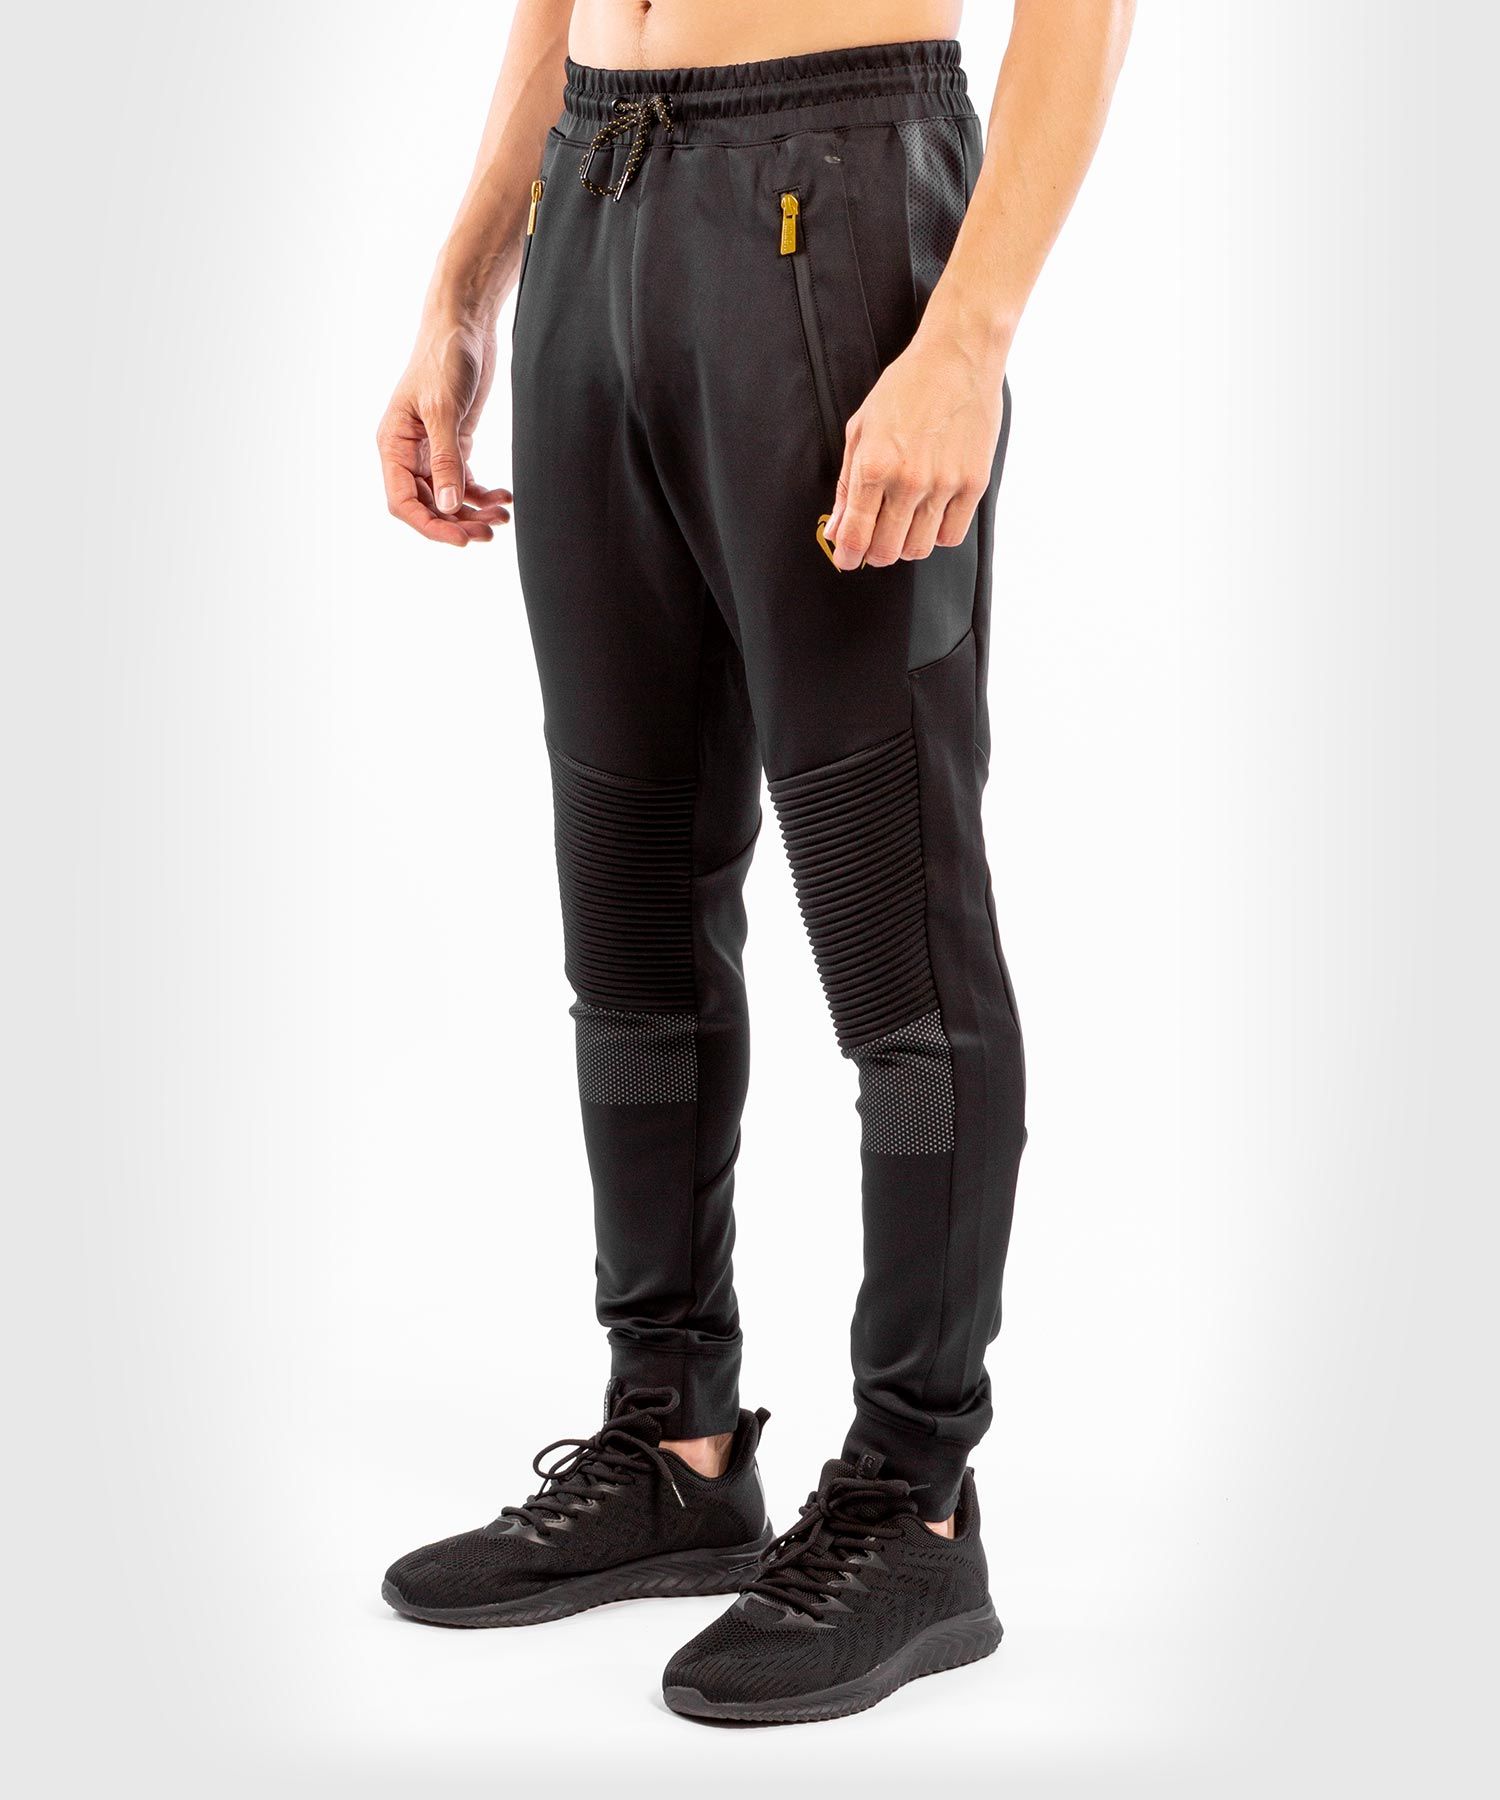 Pantalon de Jogging Venum Athletics - Noir/Or 